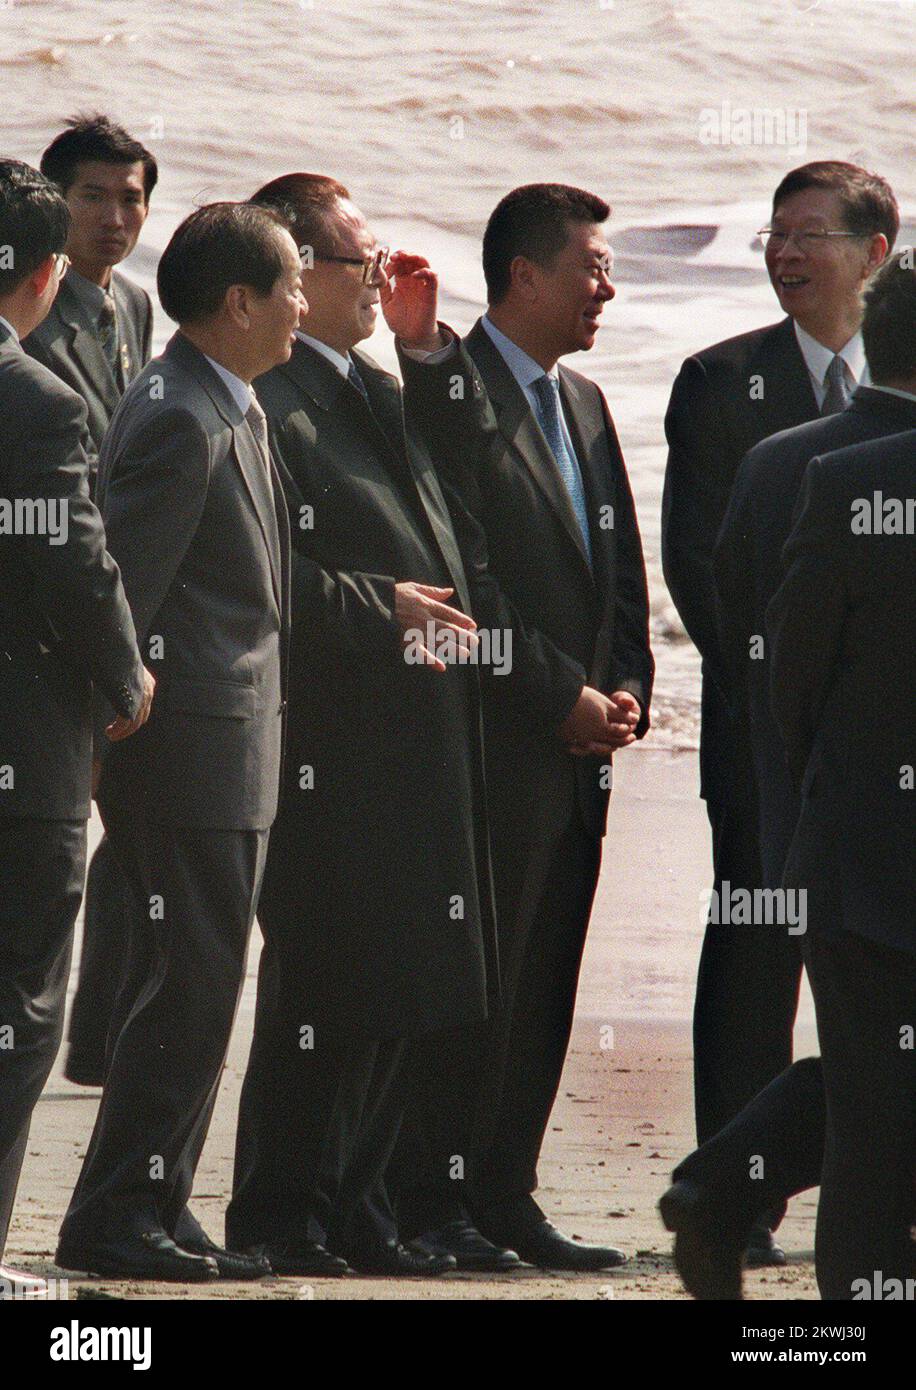 Le président du Repubilc populaire de Chine Jiang Zemin visite Hac sa Beach, Macao, à côté du vice-premier ministre Qian Qichen (à gauche) et du directeur général de Macao Edmund Ho Hau-wah. ***NE PAS UTILISER DE PUBLICITÉ*** Banque D'Images